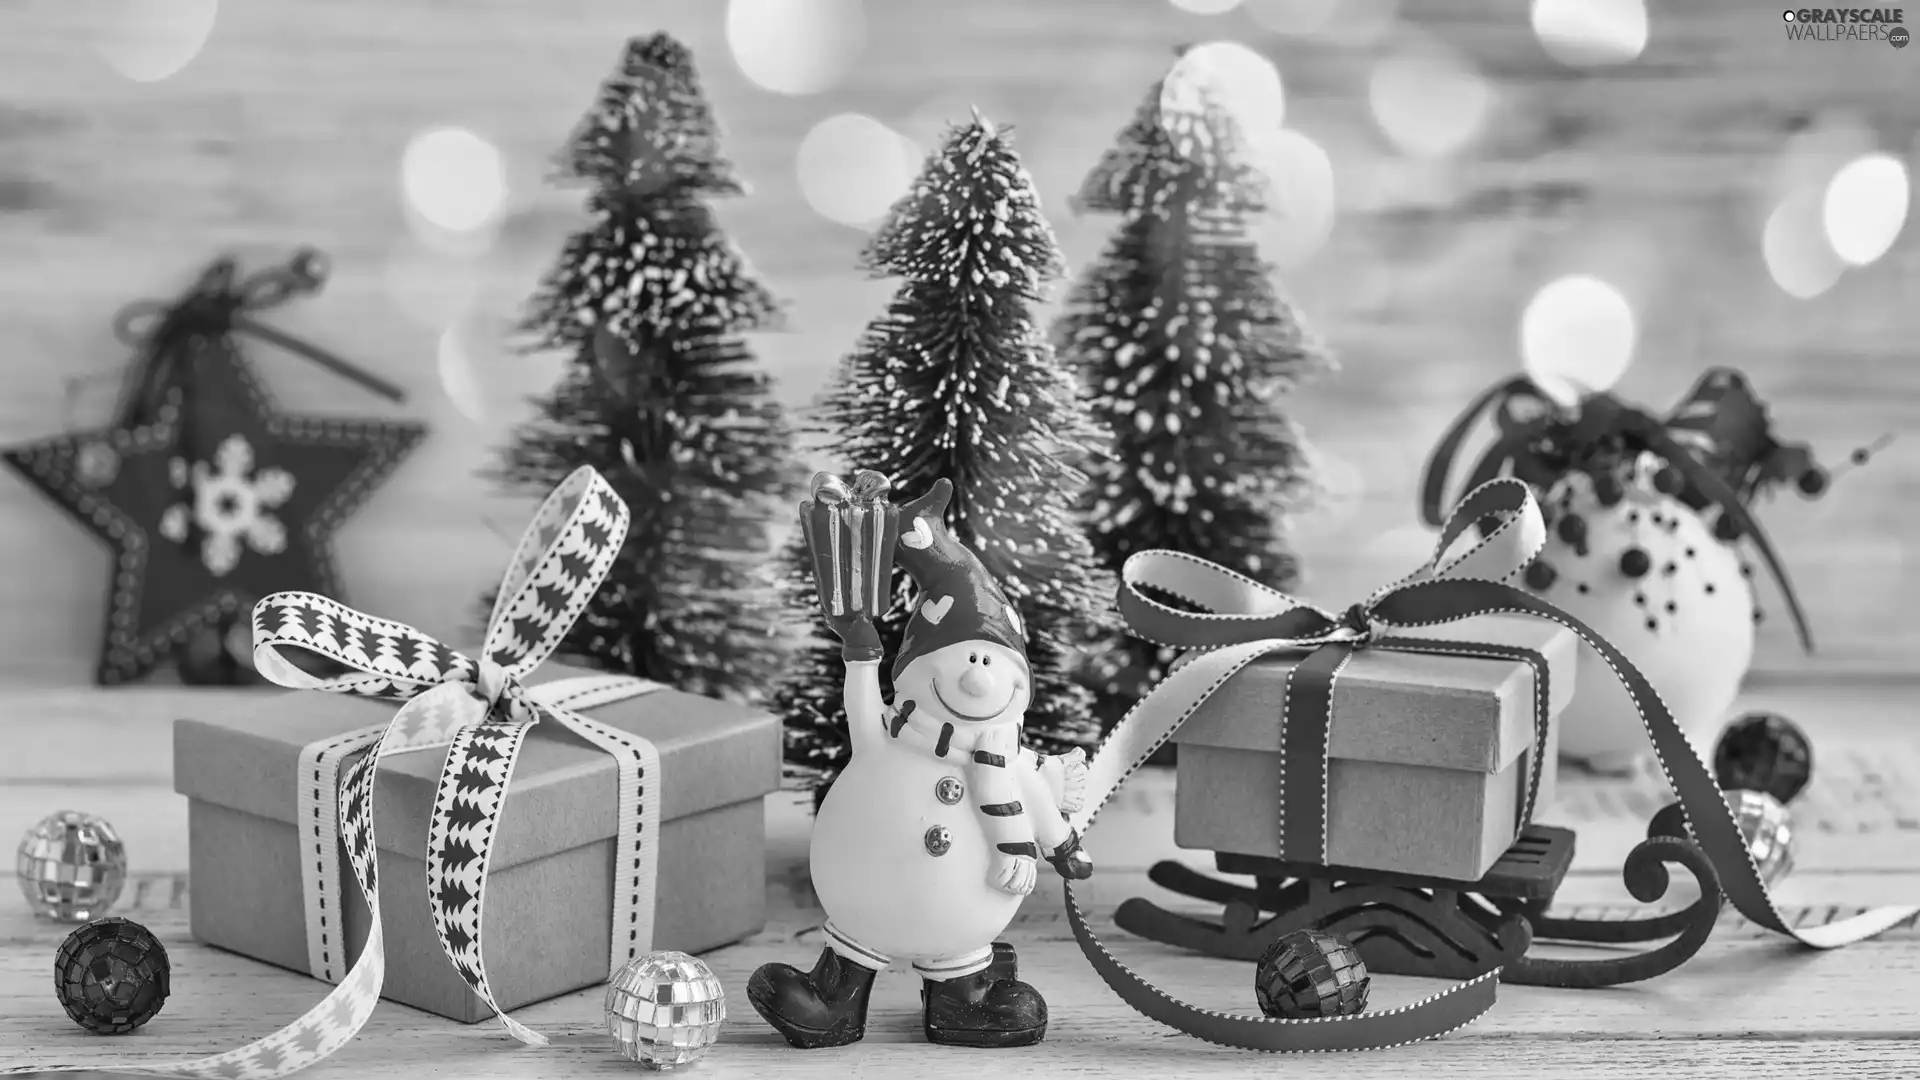 Snowman, Christmas, Christmas, Christmas, gifts, composition